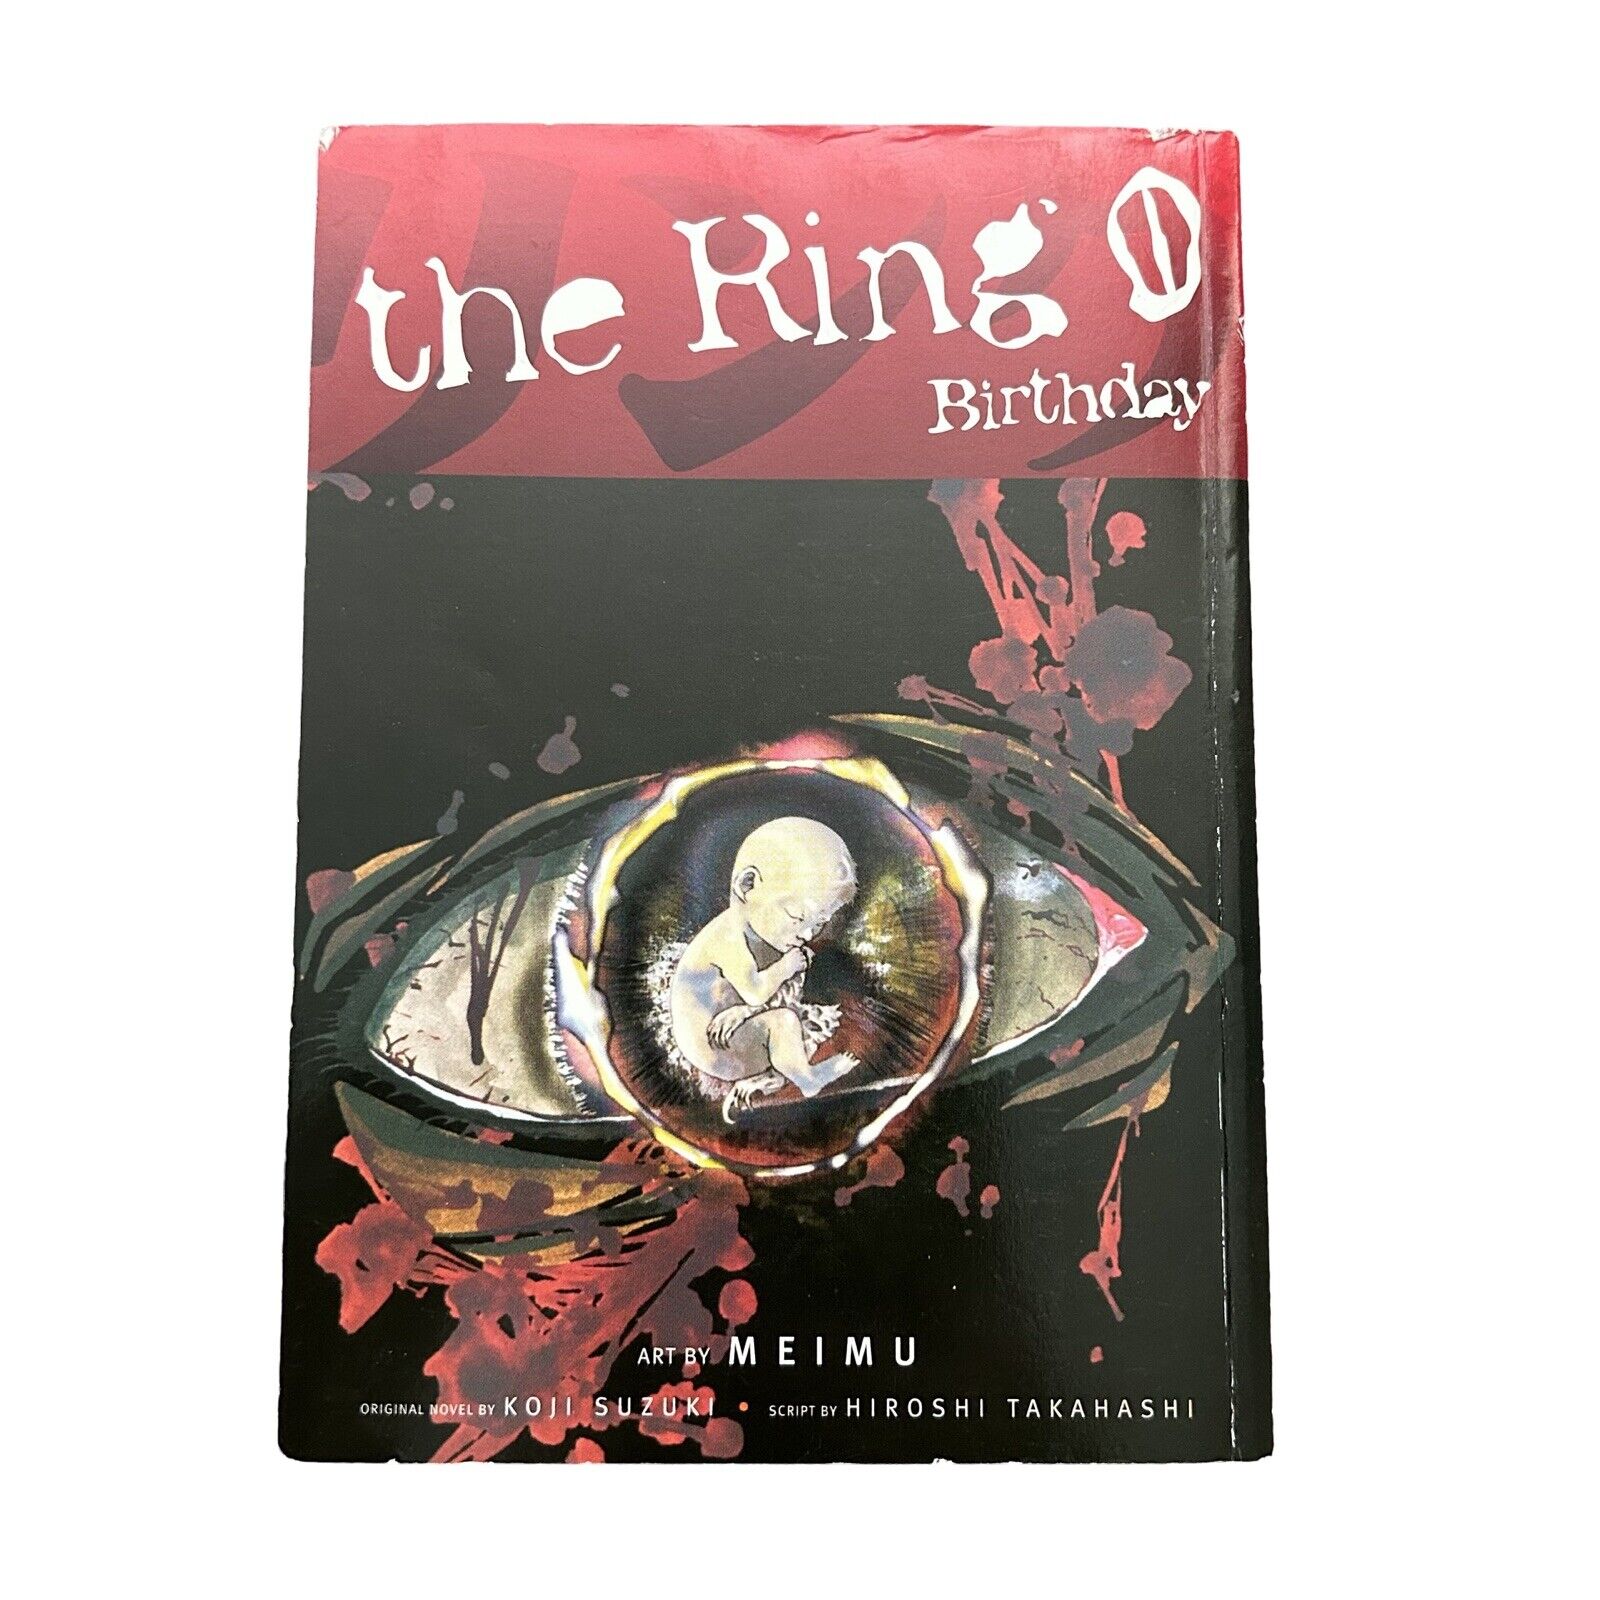 The Ring 0: Birthday - English - Manga - Hiroshi Takahashi - Koji Suzuki MEIMU